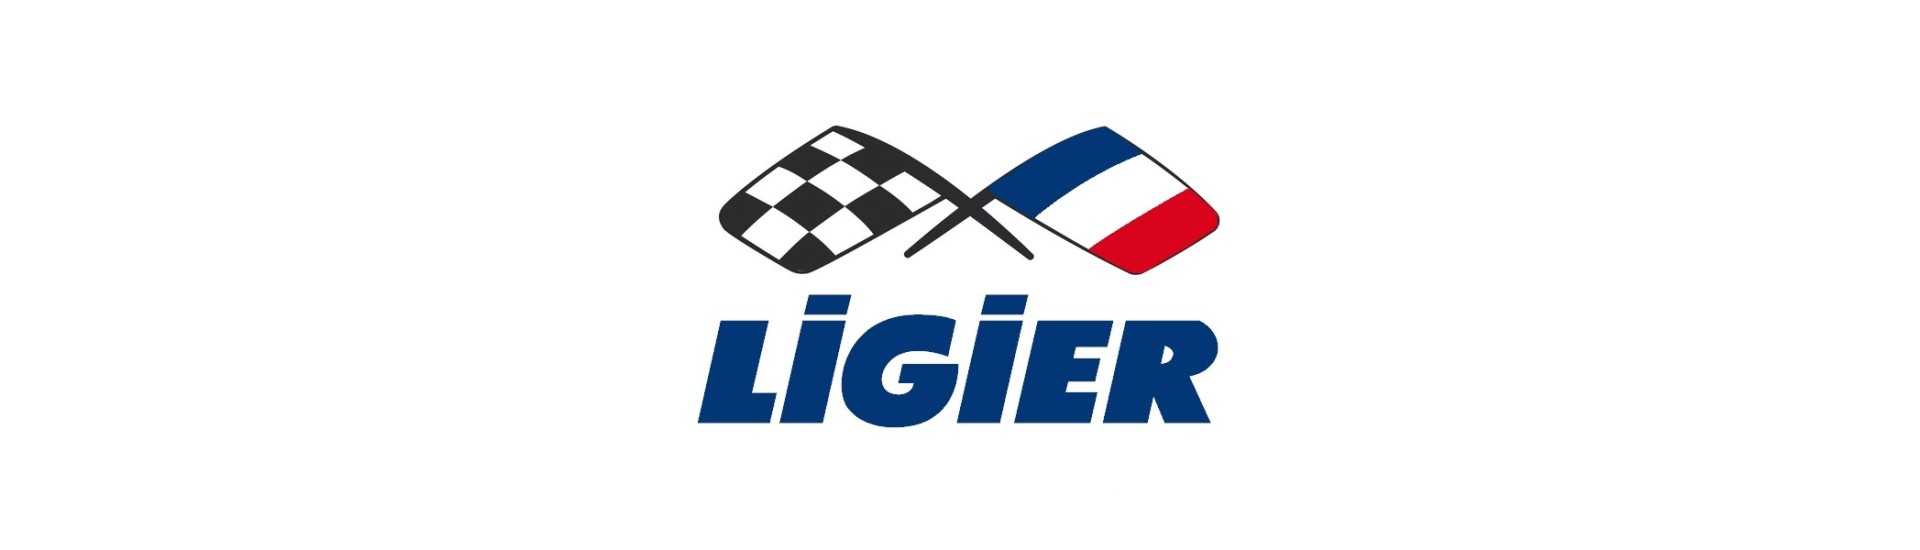 Brise Paar Joint zum besten Preis für Auto ohne Lizenz Ligier